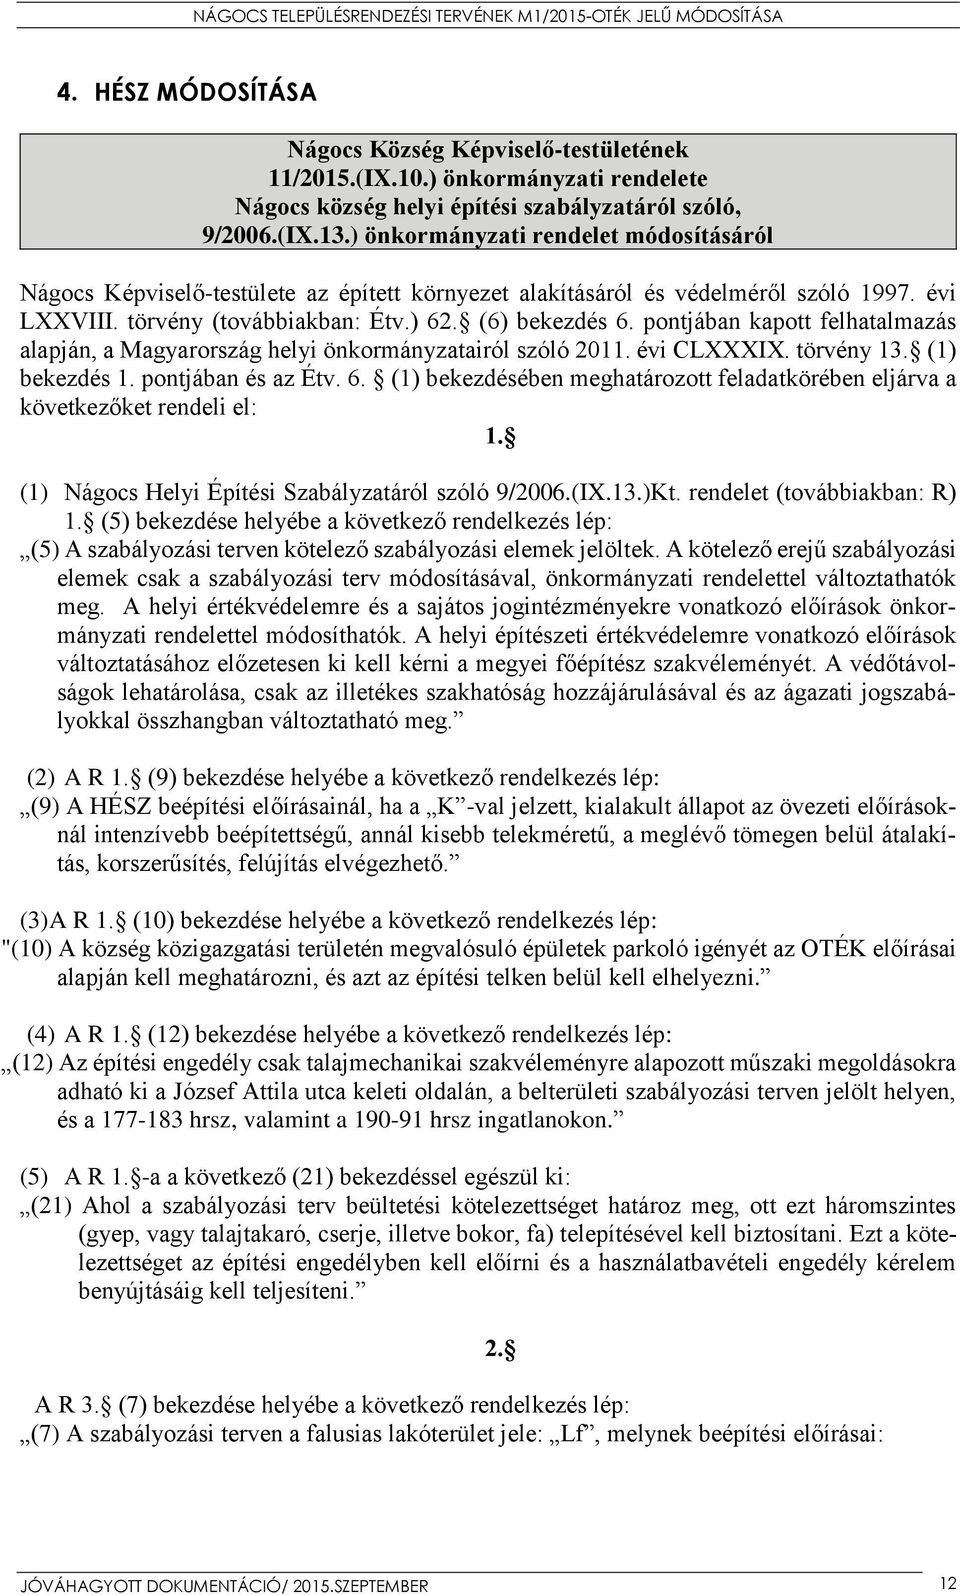 pontjában kapott felhatalmazás alapján, a Magyarország helyi önkormányzatairól szóló 2011. évi CLXXXIX. törvény 13. (1) bekezdés 1. pontjában és az Étv. 6.